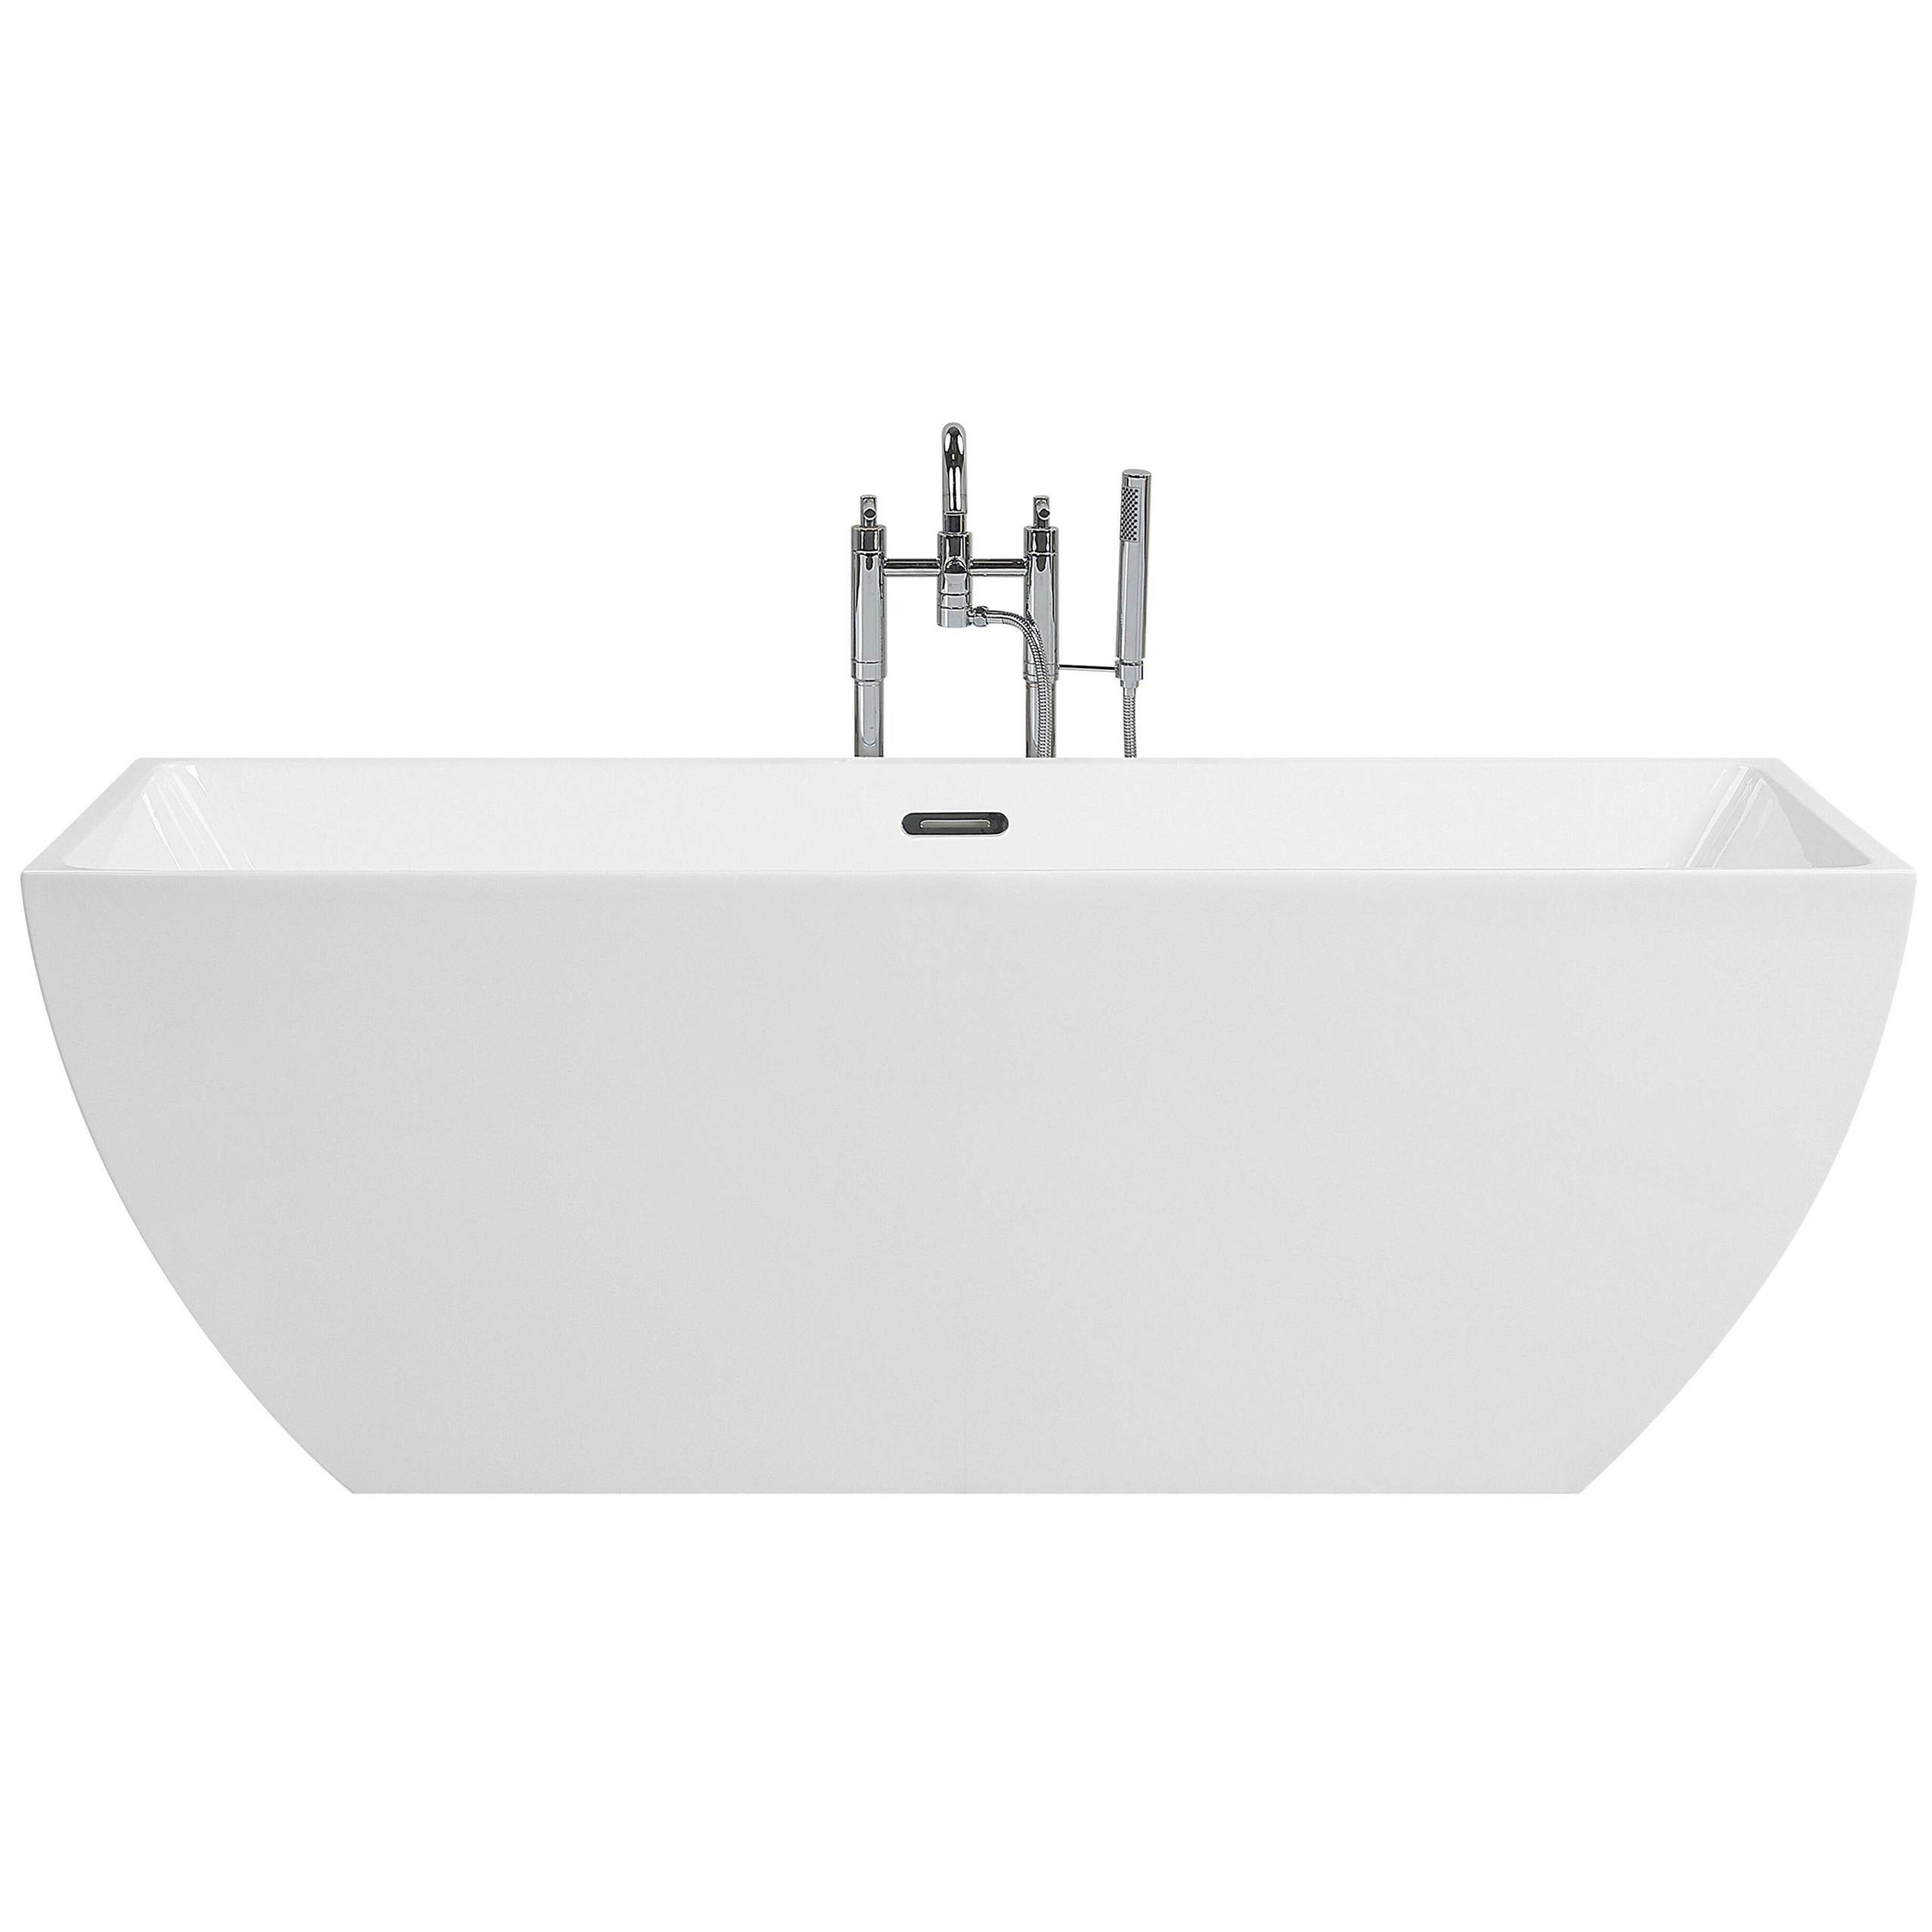 Beliani Banheira autónoma branca em acrílico sanitário 170 cm design moderno e minimalista